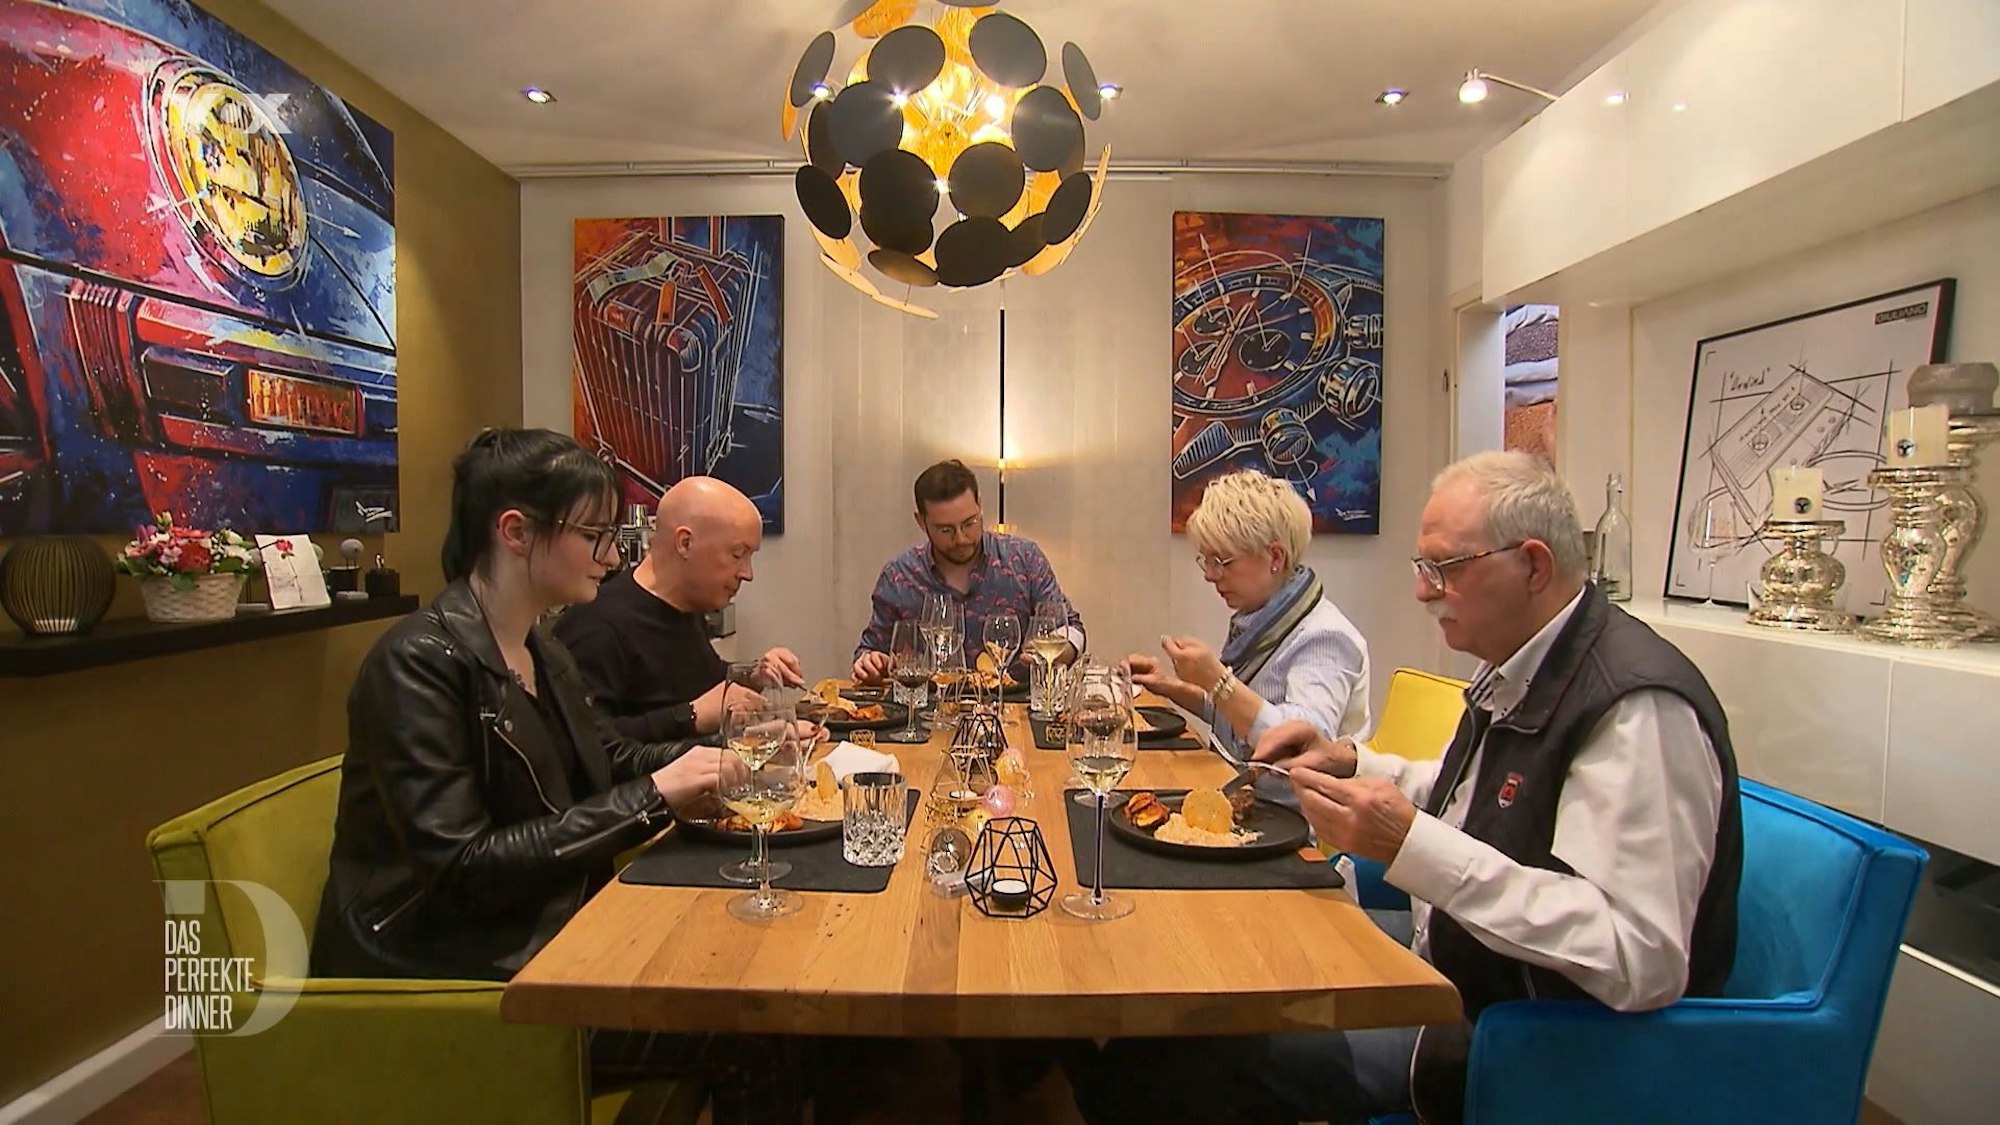 Das perfekte Dinner (12.5.2022) Die Gäste freuen sich auf das Rinderfilet, von links: Vivi, Leander, Gastgeber Julian, Gabi und Reinhold.